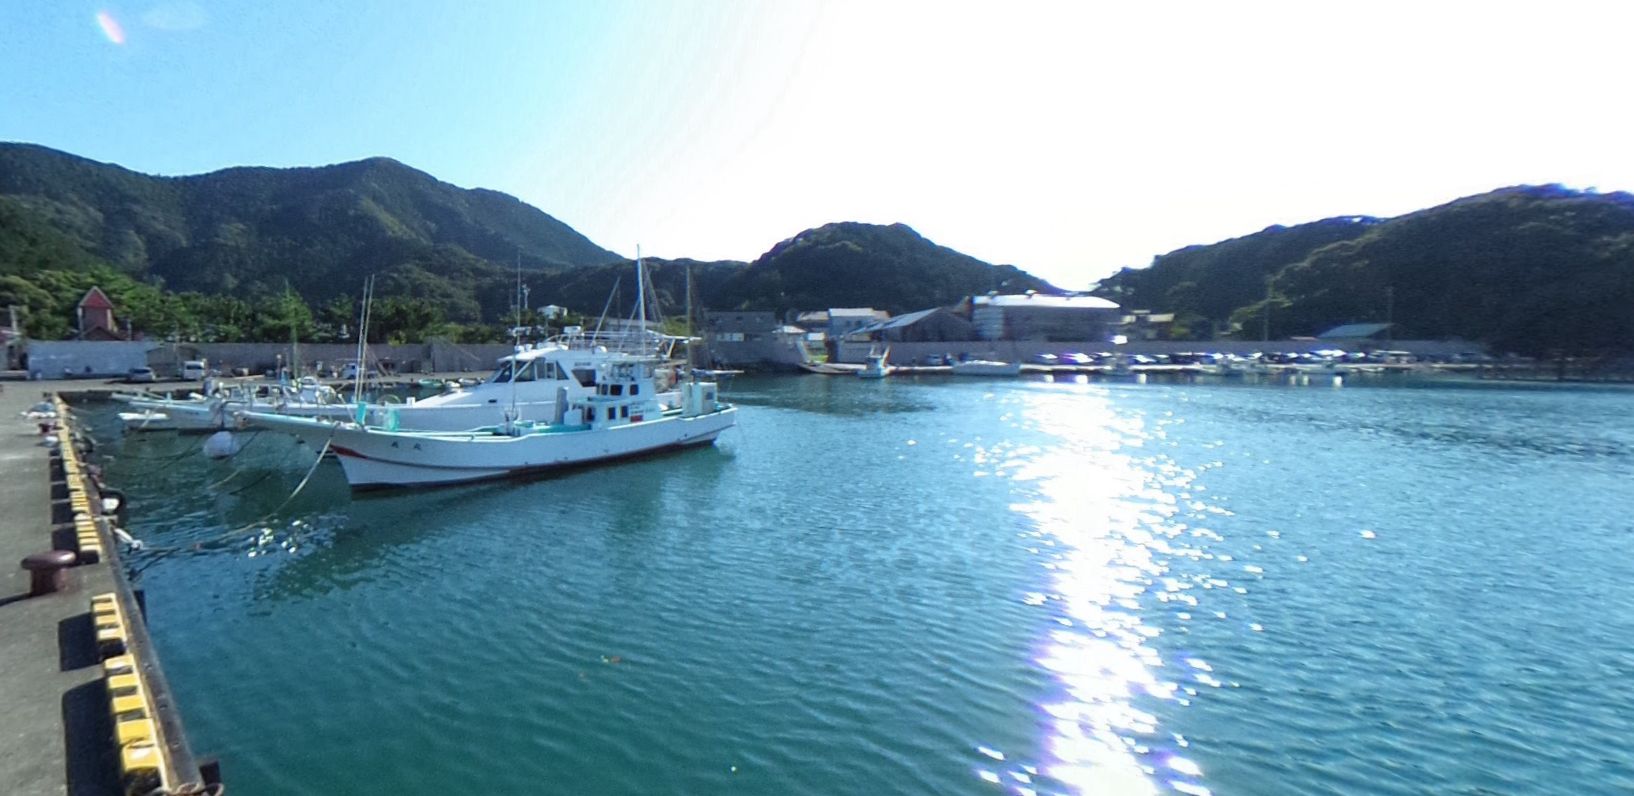 沼津 宇久須港 の釣りポイント情報まとめ サビキ エギング カゴ釣りで青物など狙える 釣りマップ